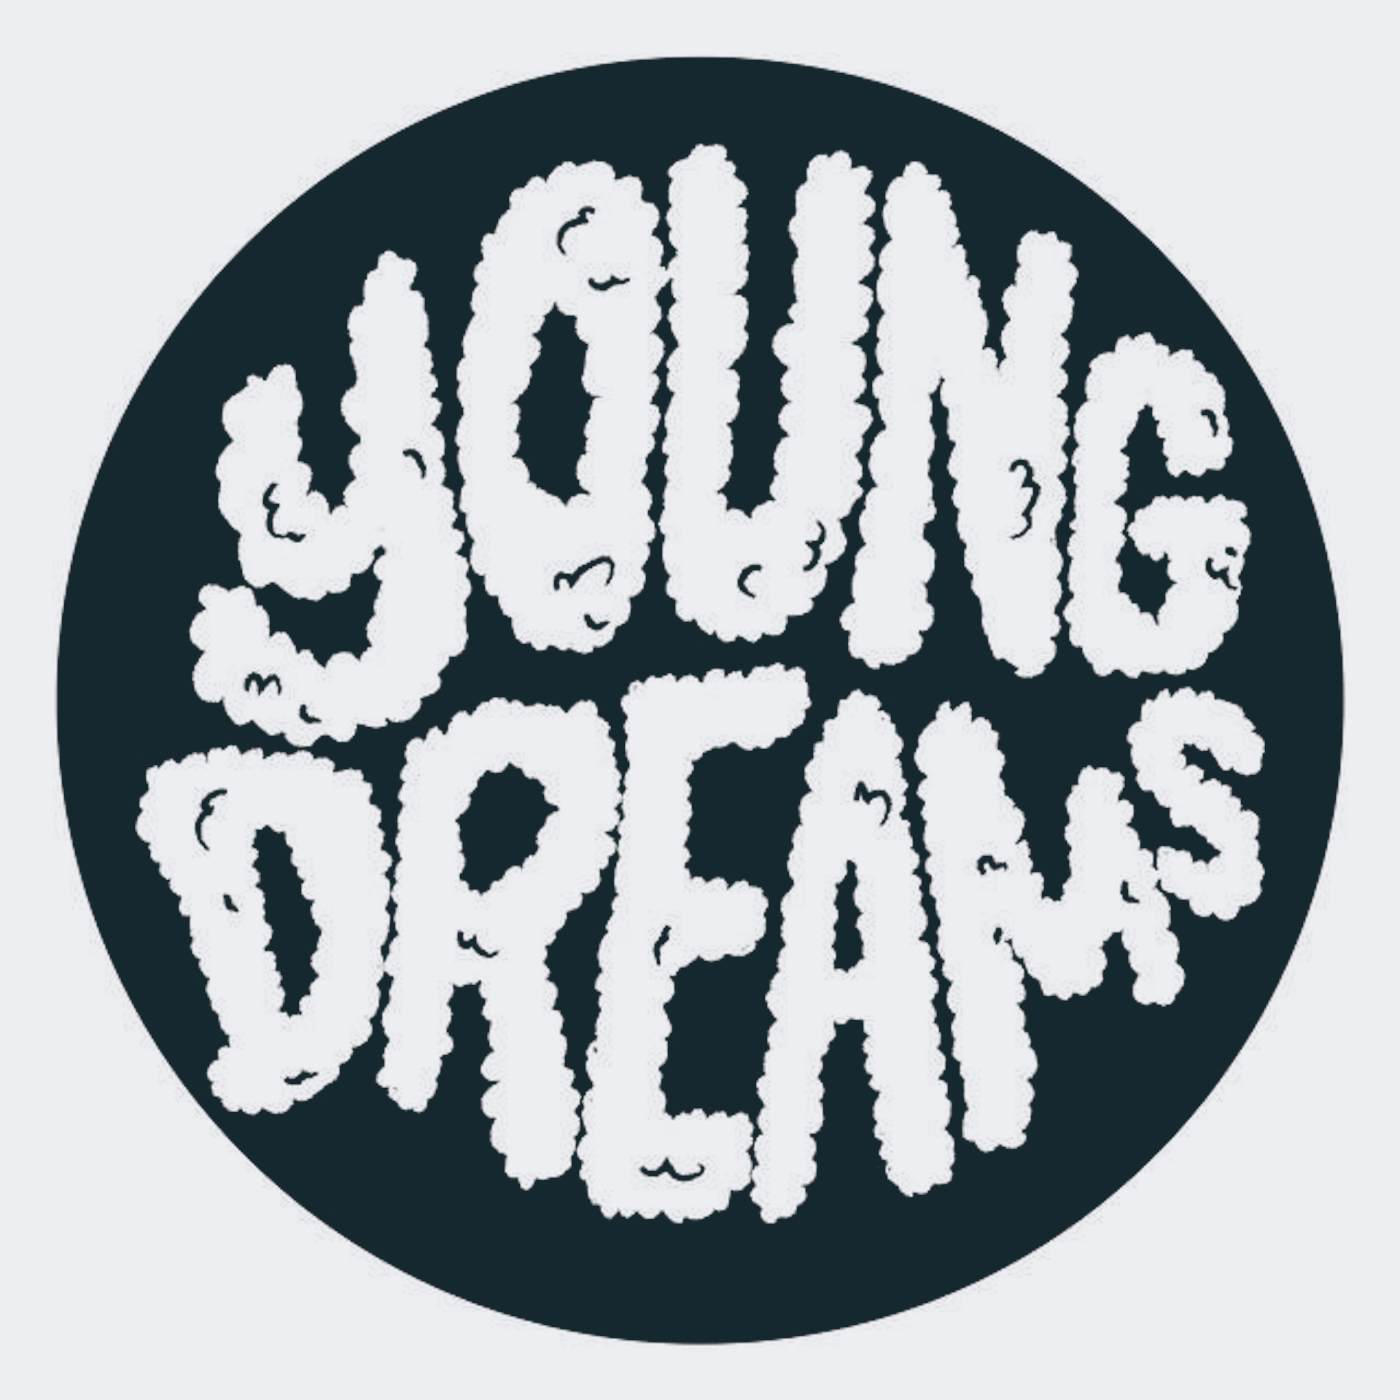 Young Dreams